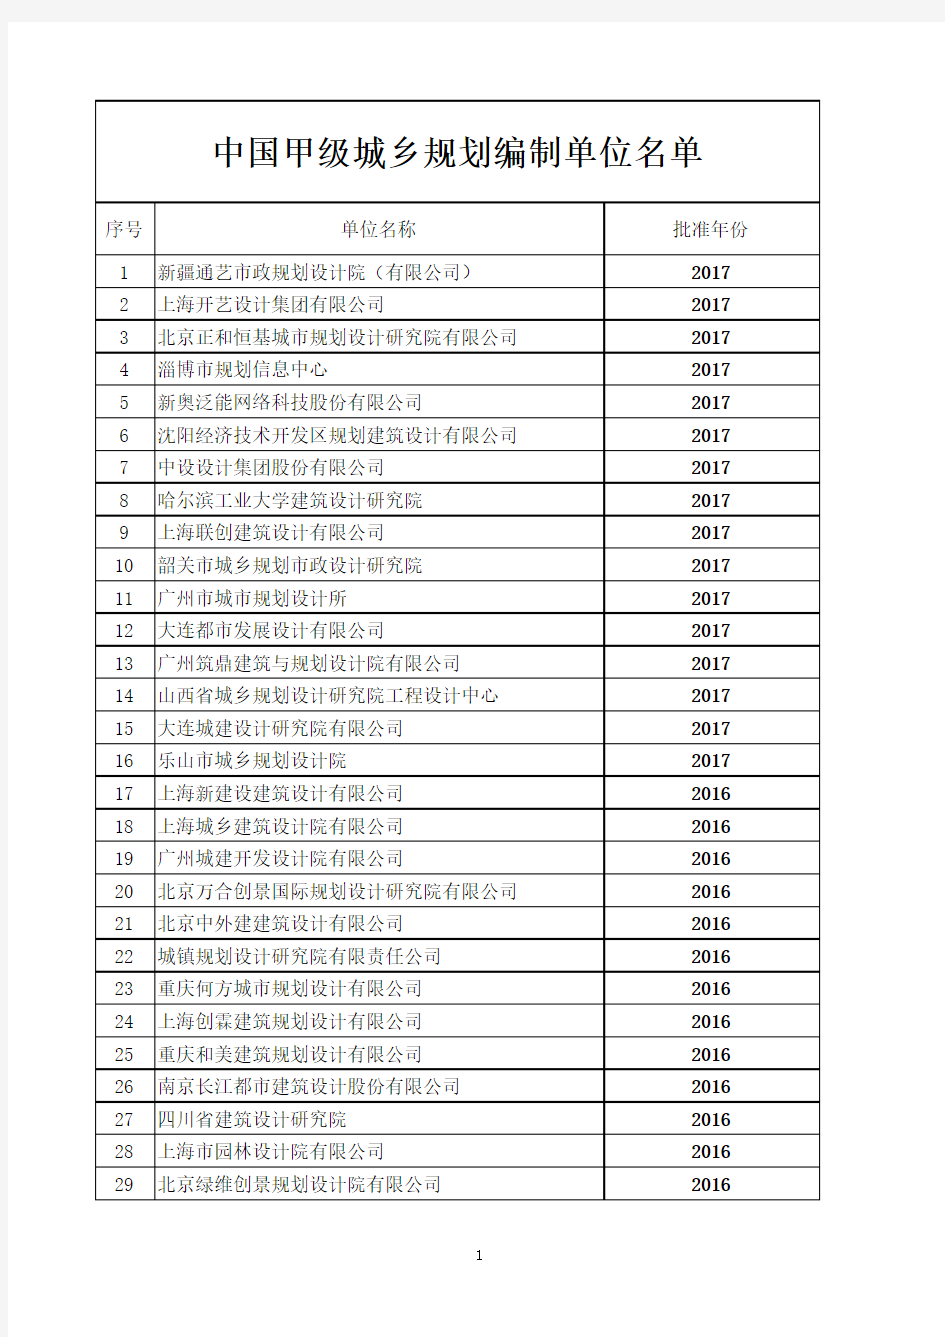 最新!中国甲级城乡规划编制资质单位名单(截止到2017年12月)